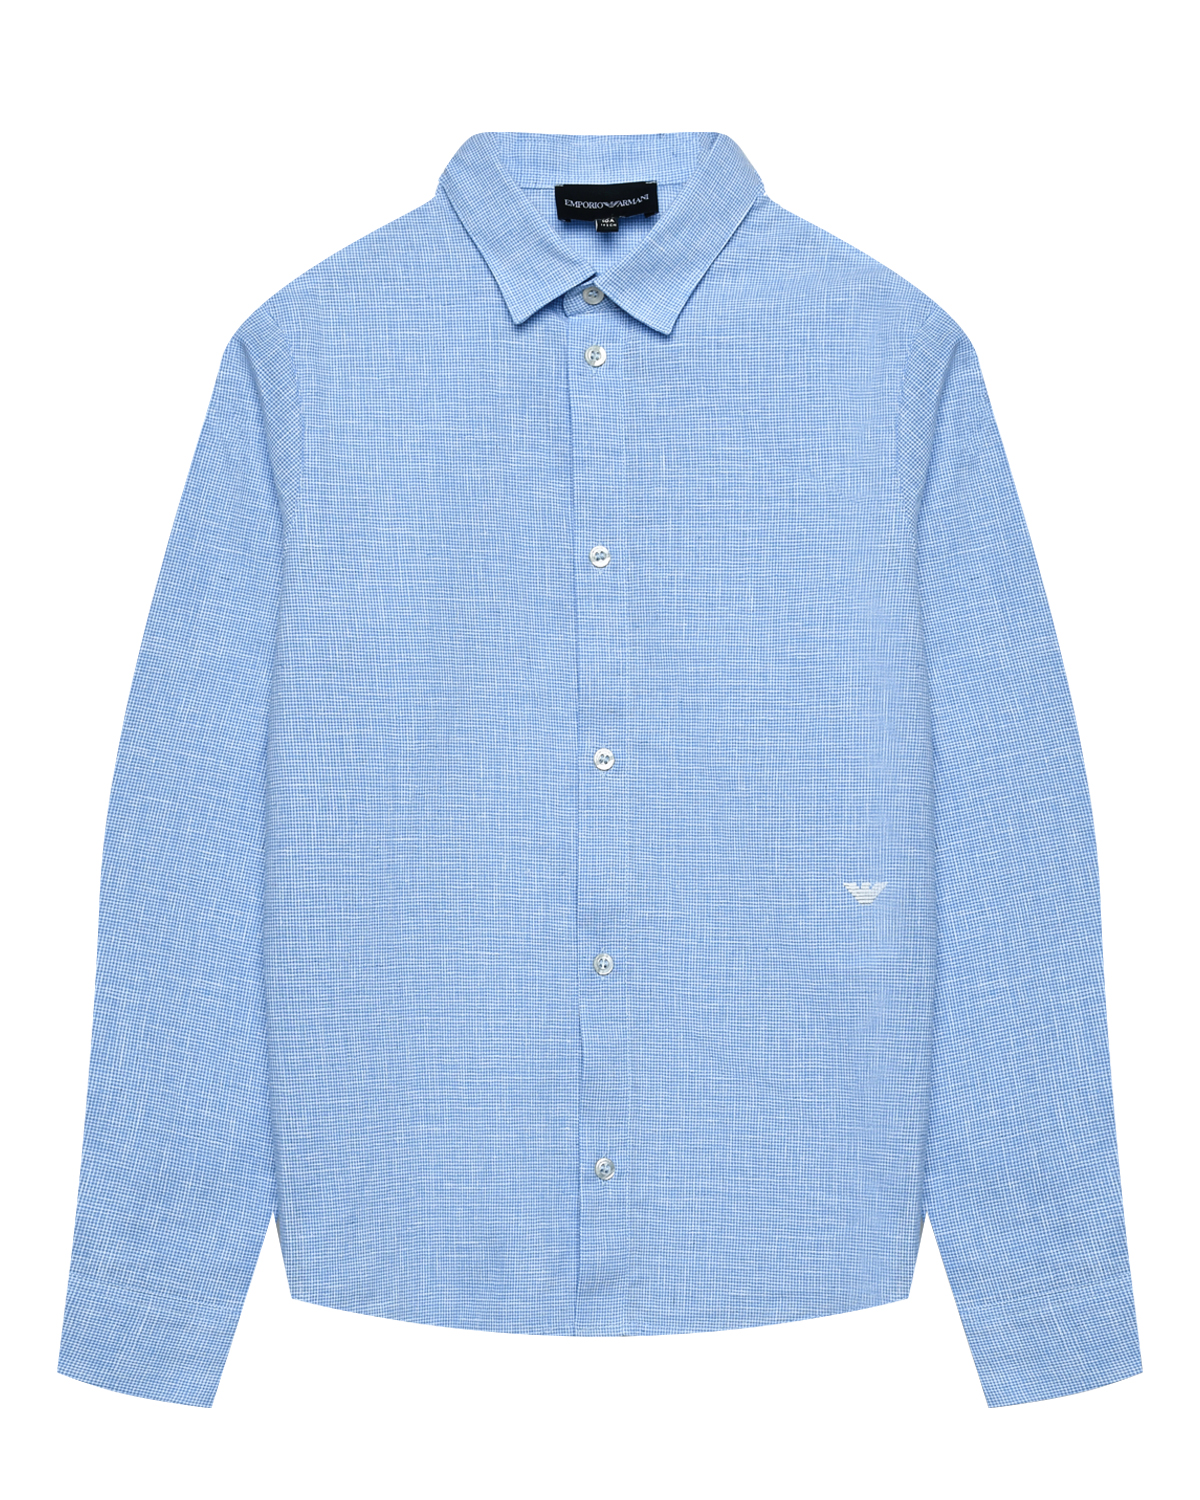 Рубашка с длинными рукавами, голубая Emporio Armani, размер 176, цвет нет цвета - фото 1